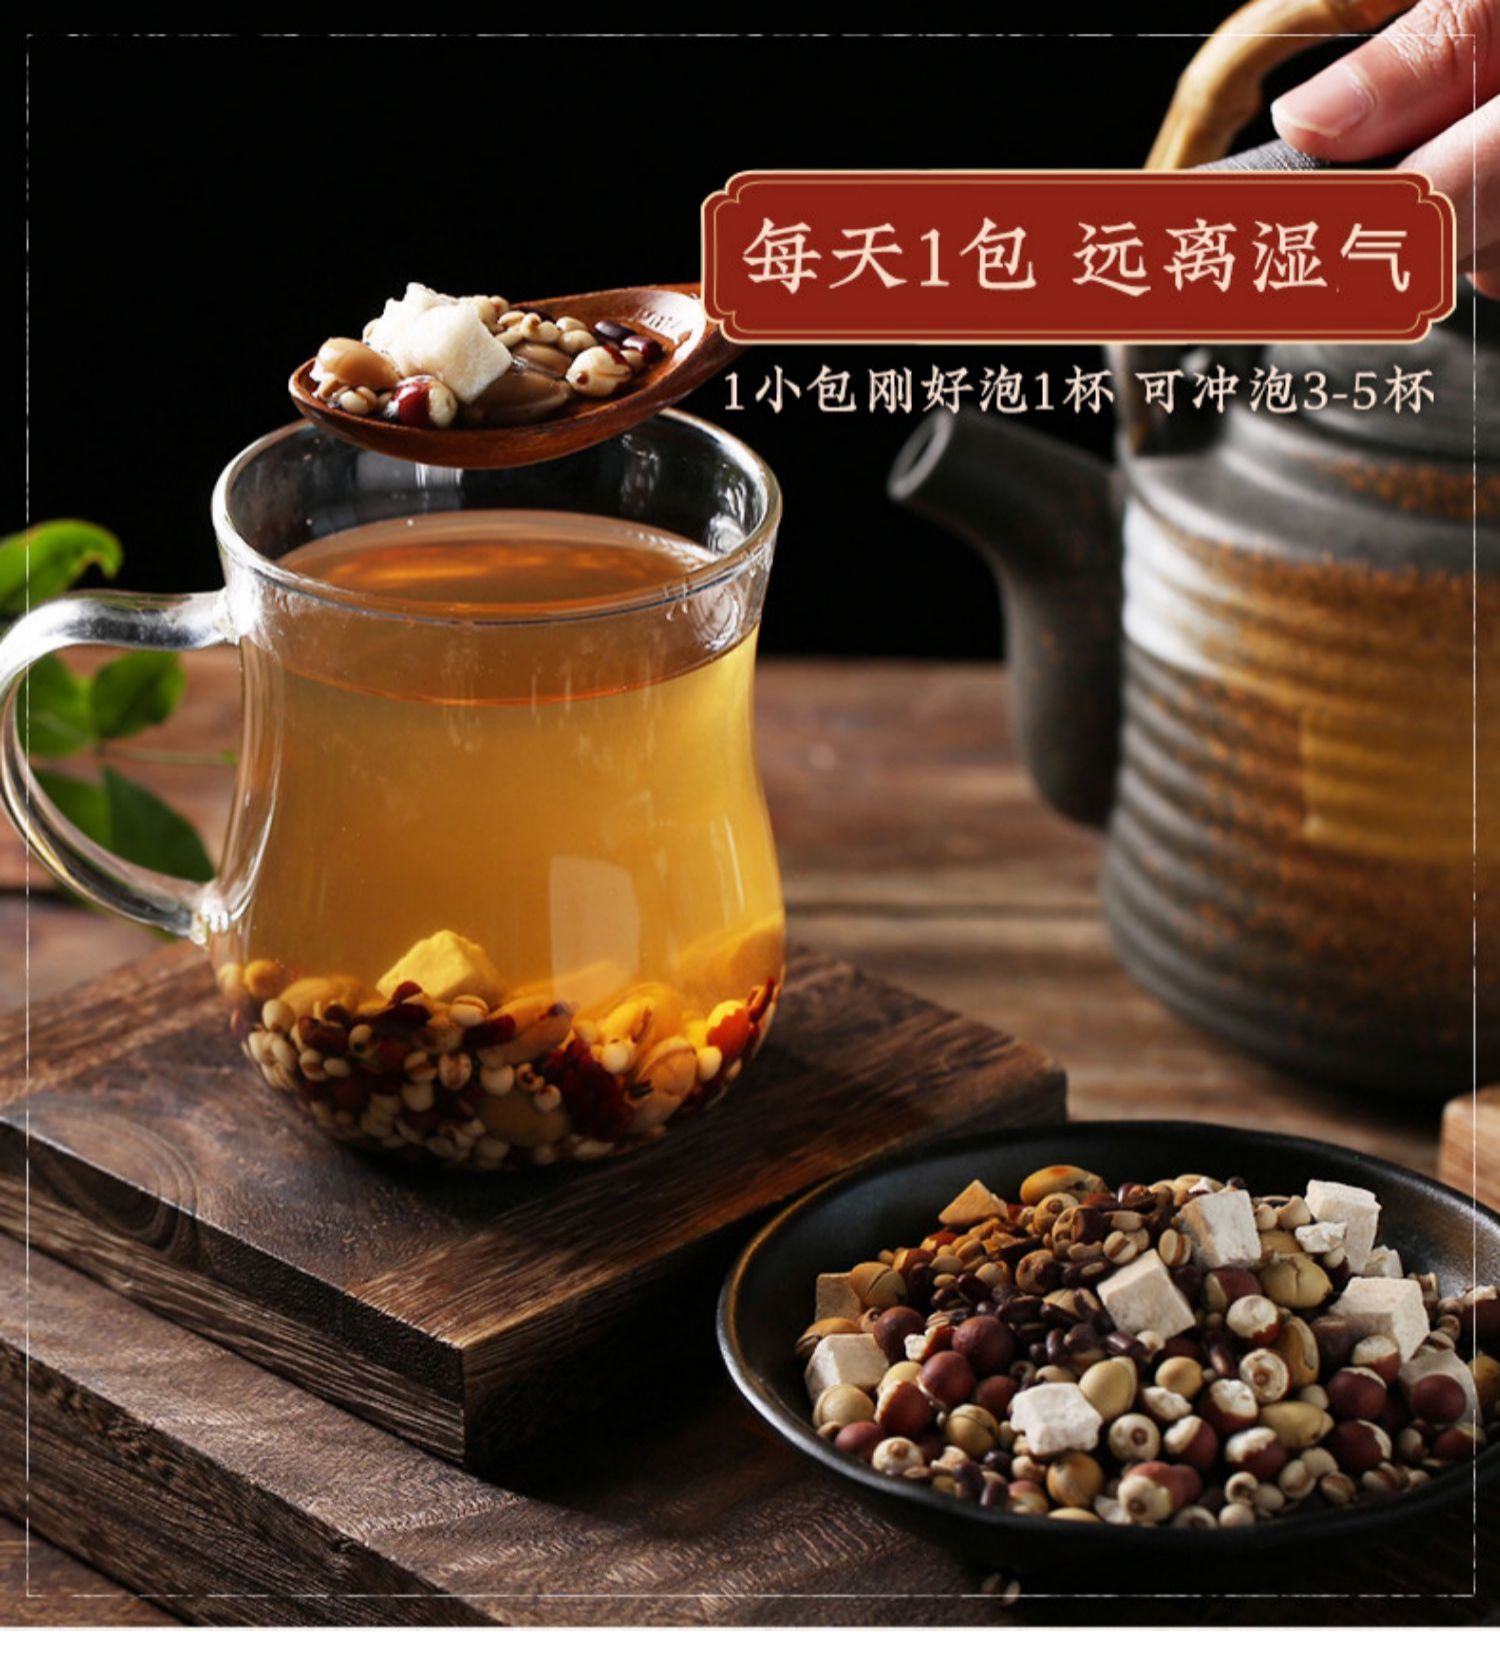 薏米仁赤小豆芡实茯苓祛湿粥红豆薏仁米茶